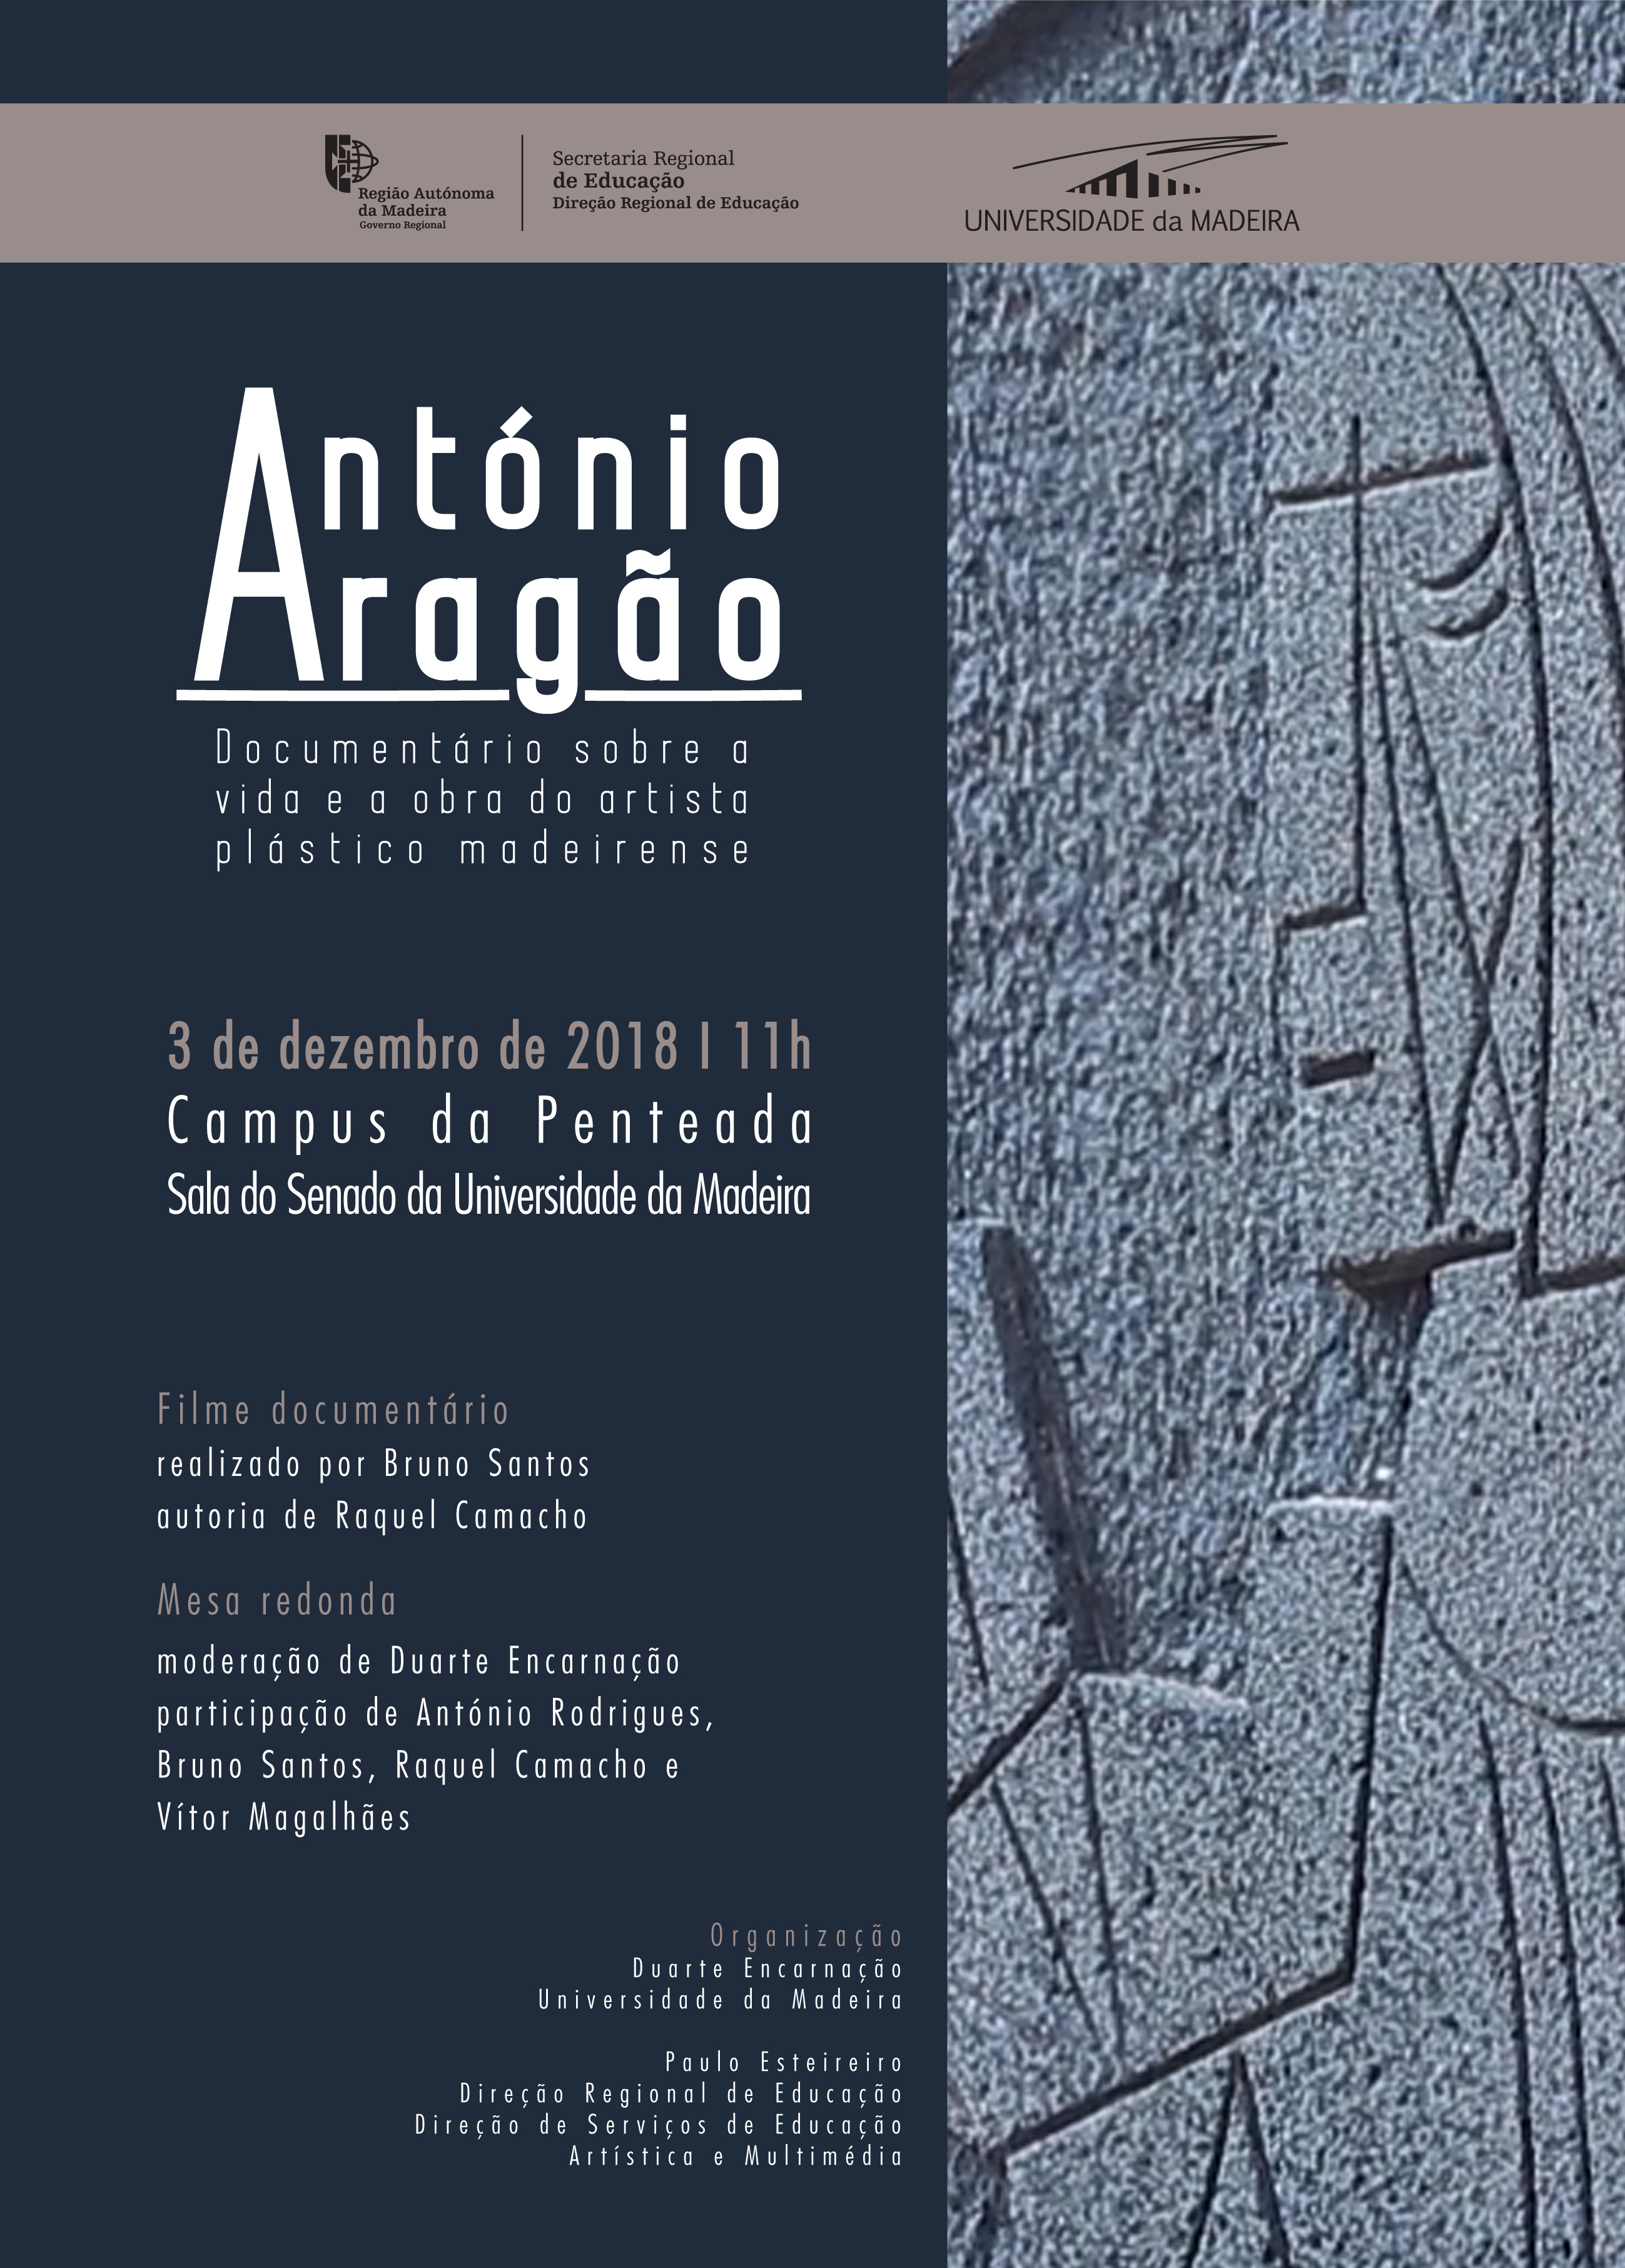 Documentário sobre António Aragão